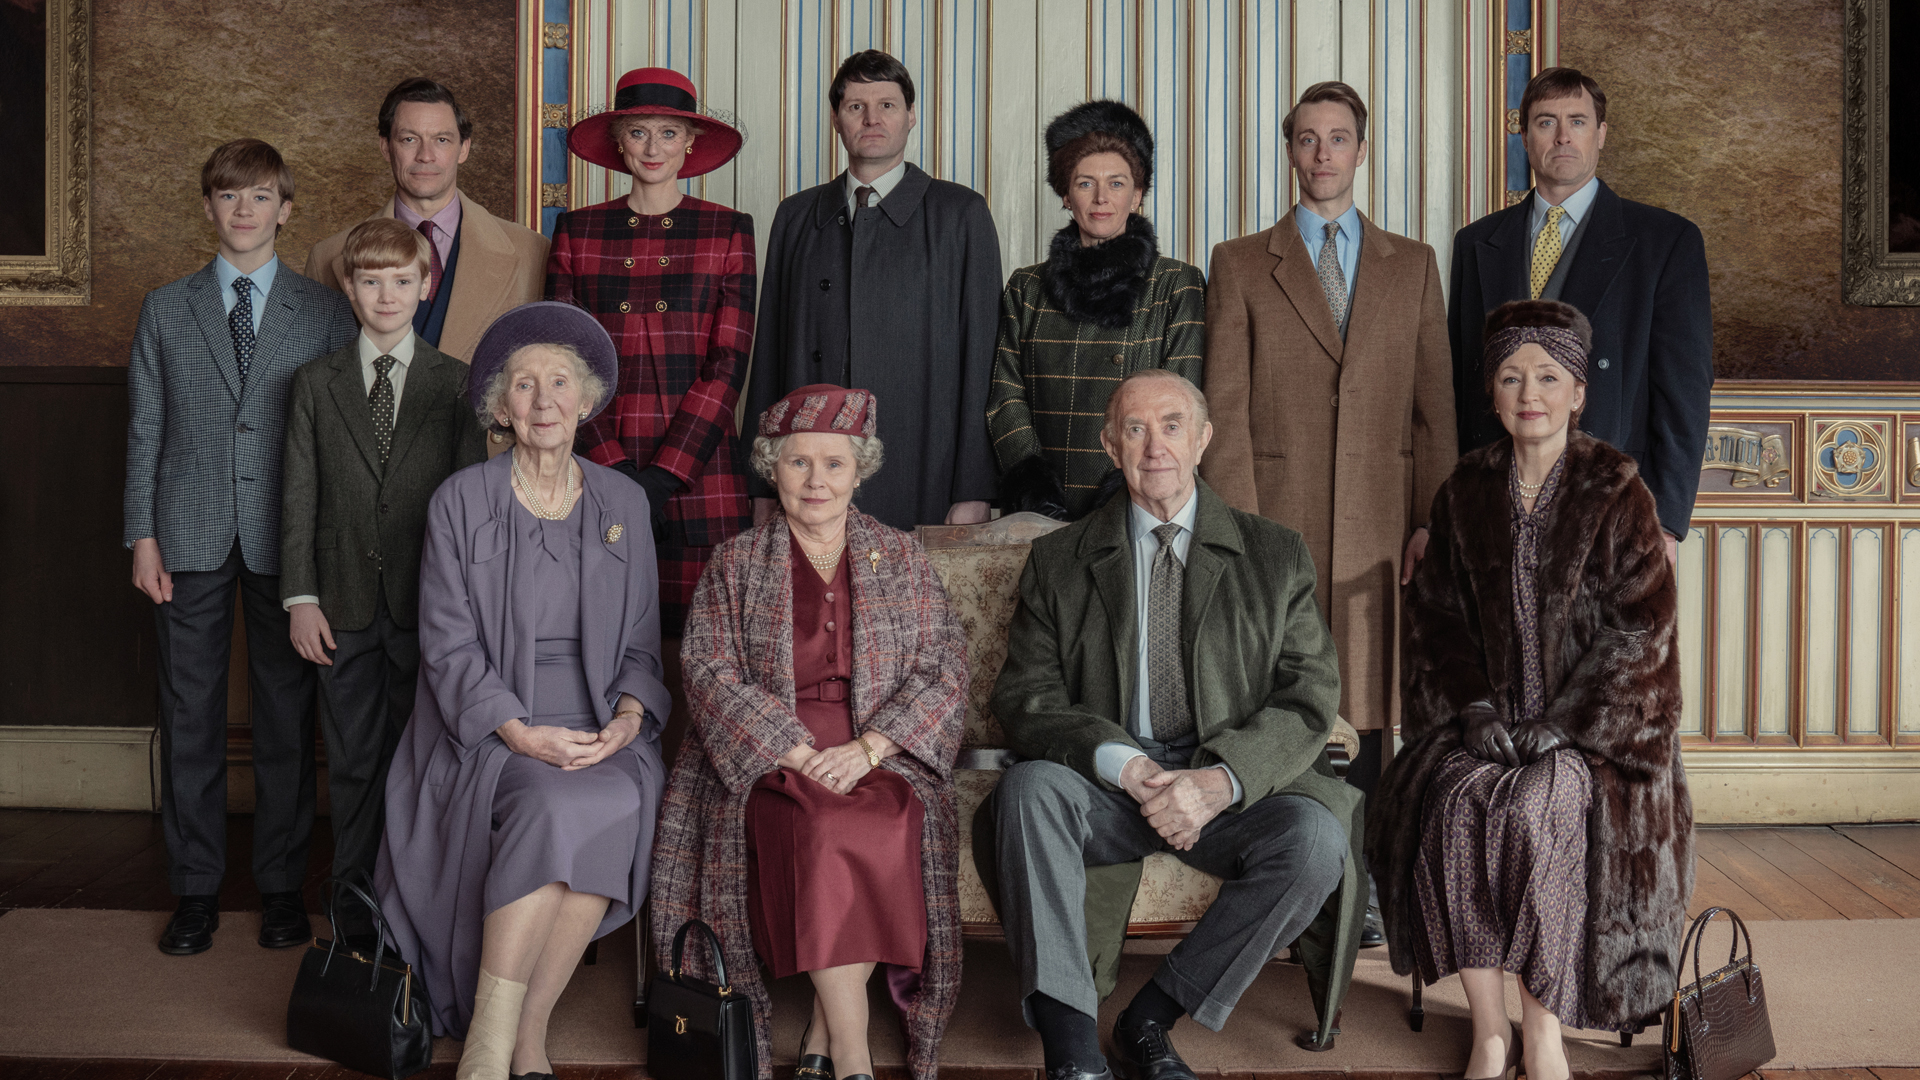 La famille royale pose pour un portrait dans la saison 5 de The Crown sur Netflix